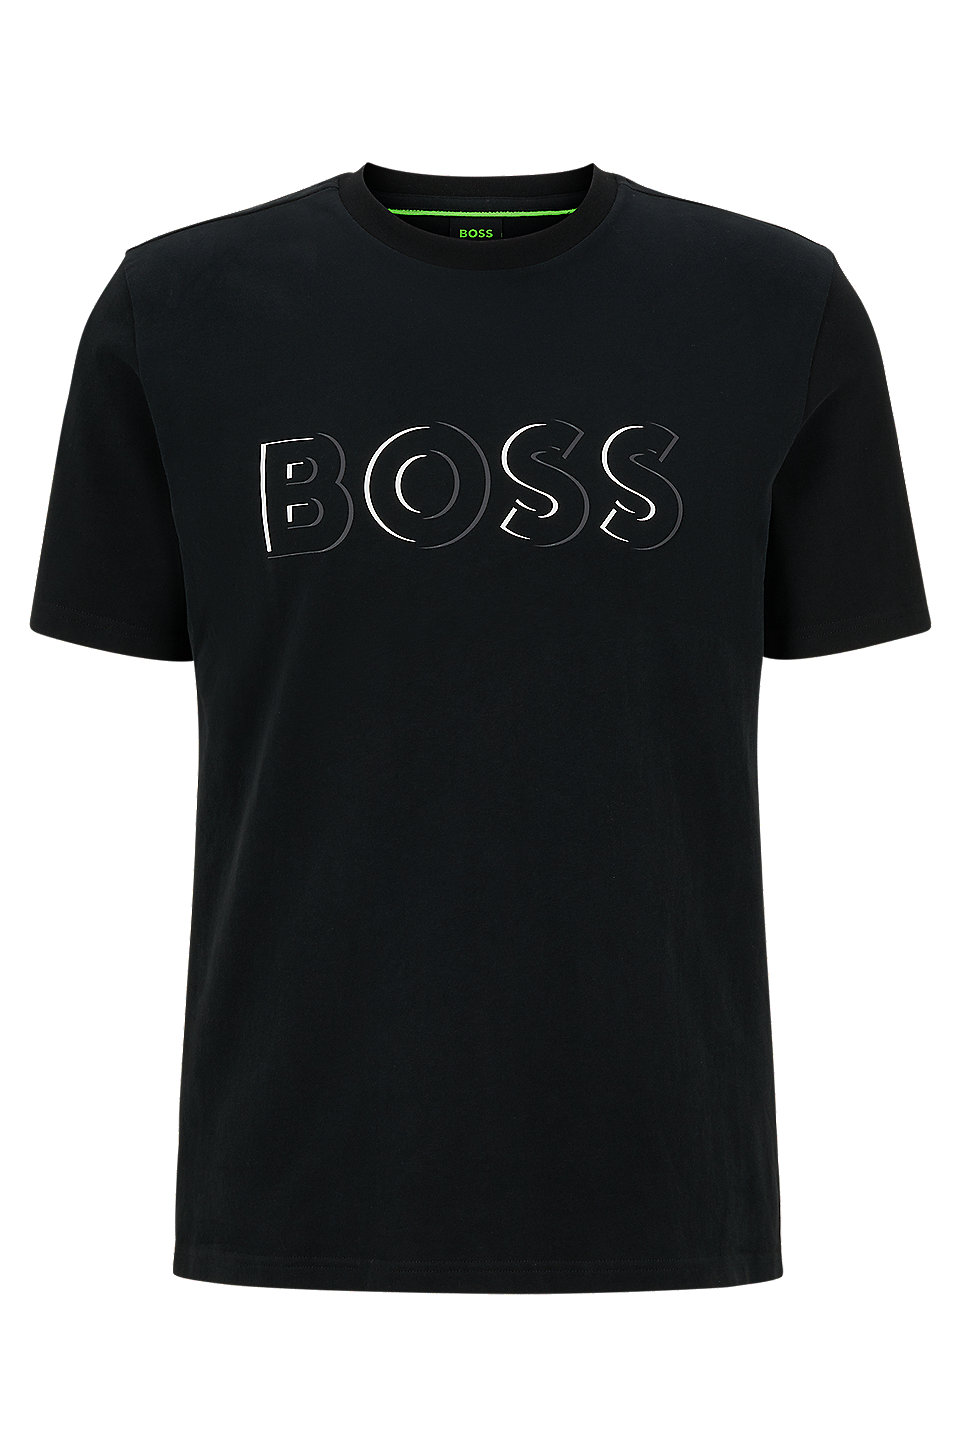 BOSS ブラッシュドコットンジャージー Tシャツ ダイナミックロゴプリント